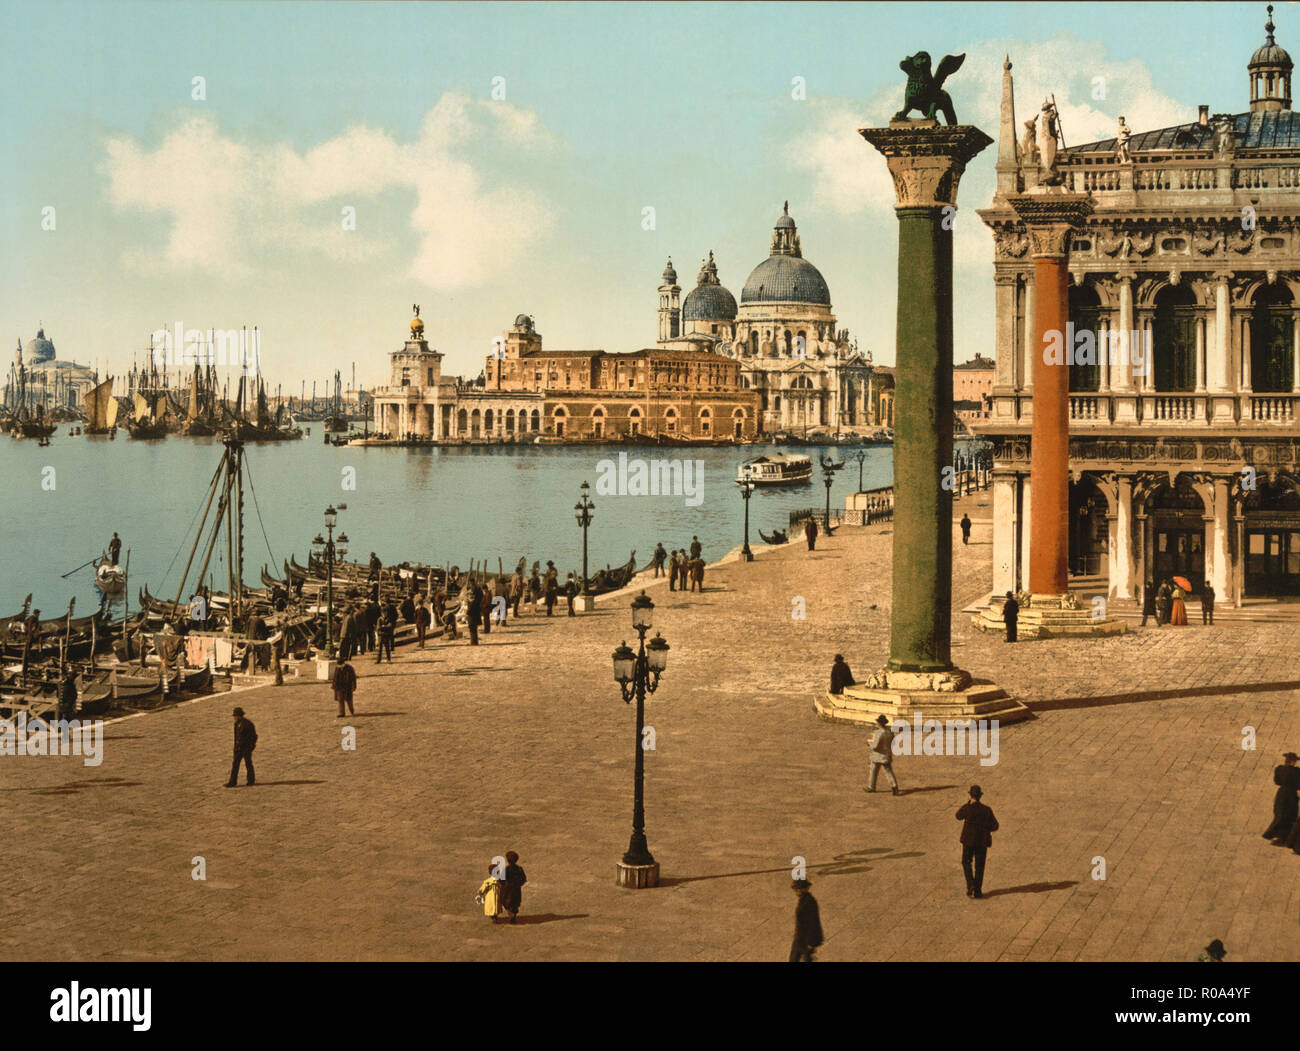 Piazzetta et colonnes de Saint Mark's, Venise, Italie, impression Photochrome, Detroit Publishing Company, 1900 Banque D'Images